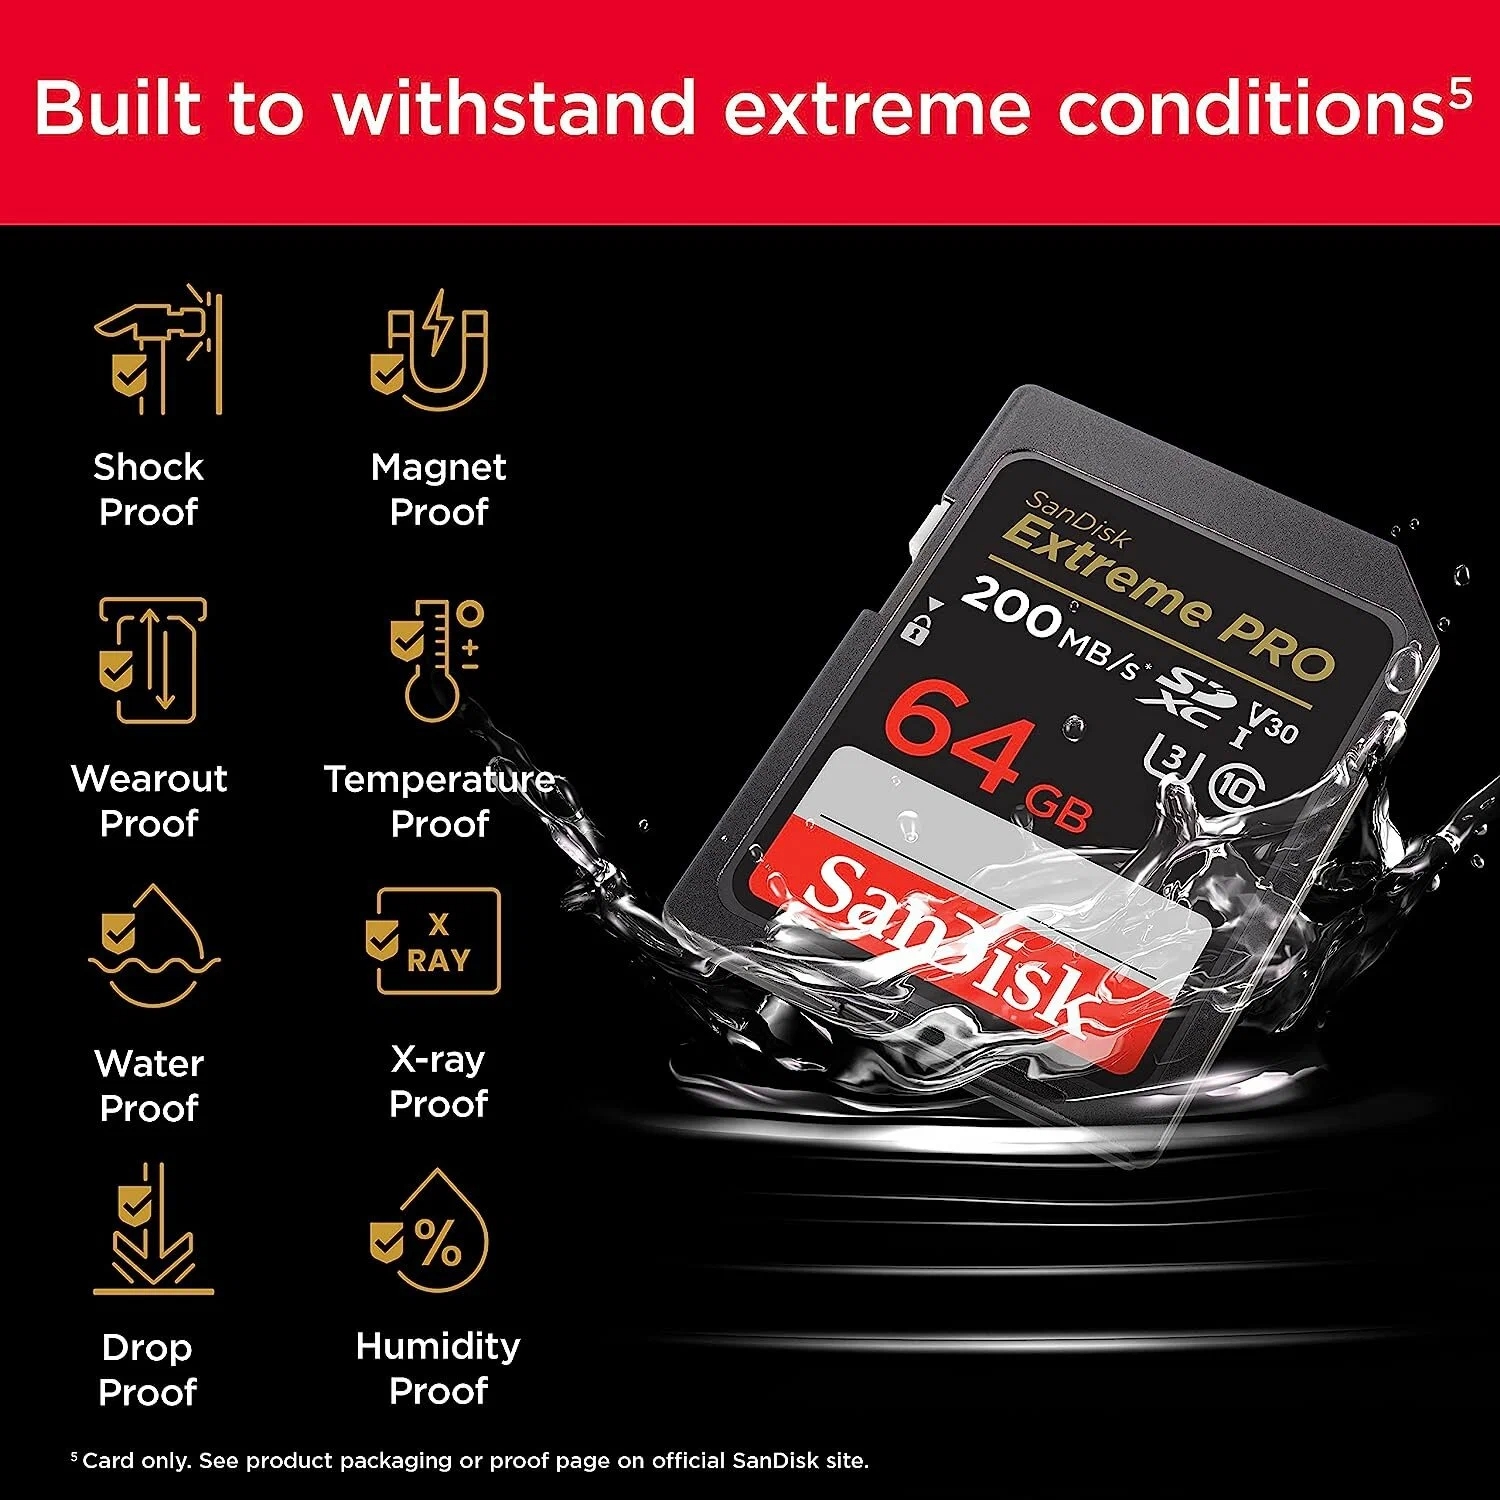 Карта памяти SanDisk Extreme Pro SDXC 64Gb  Class10  UHS-I U3 V30 (200/90 Mb/s)